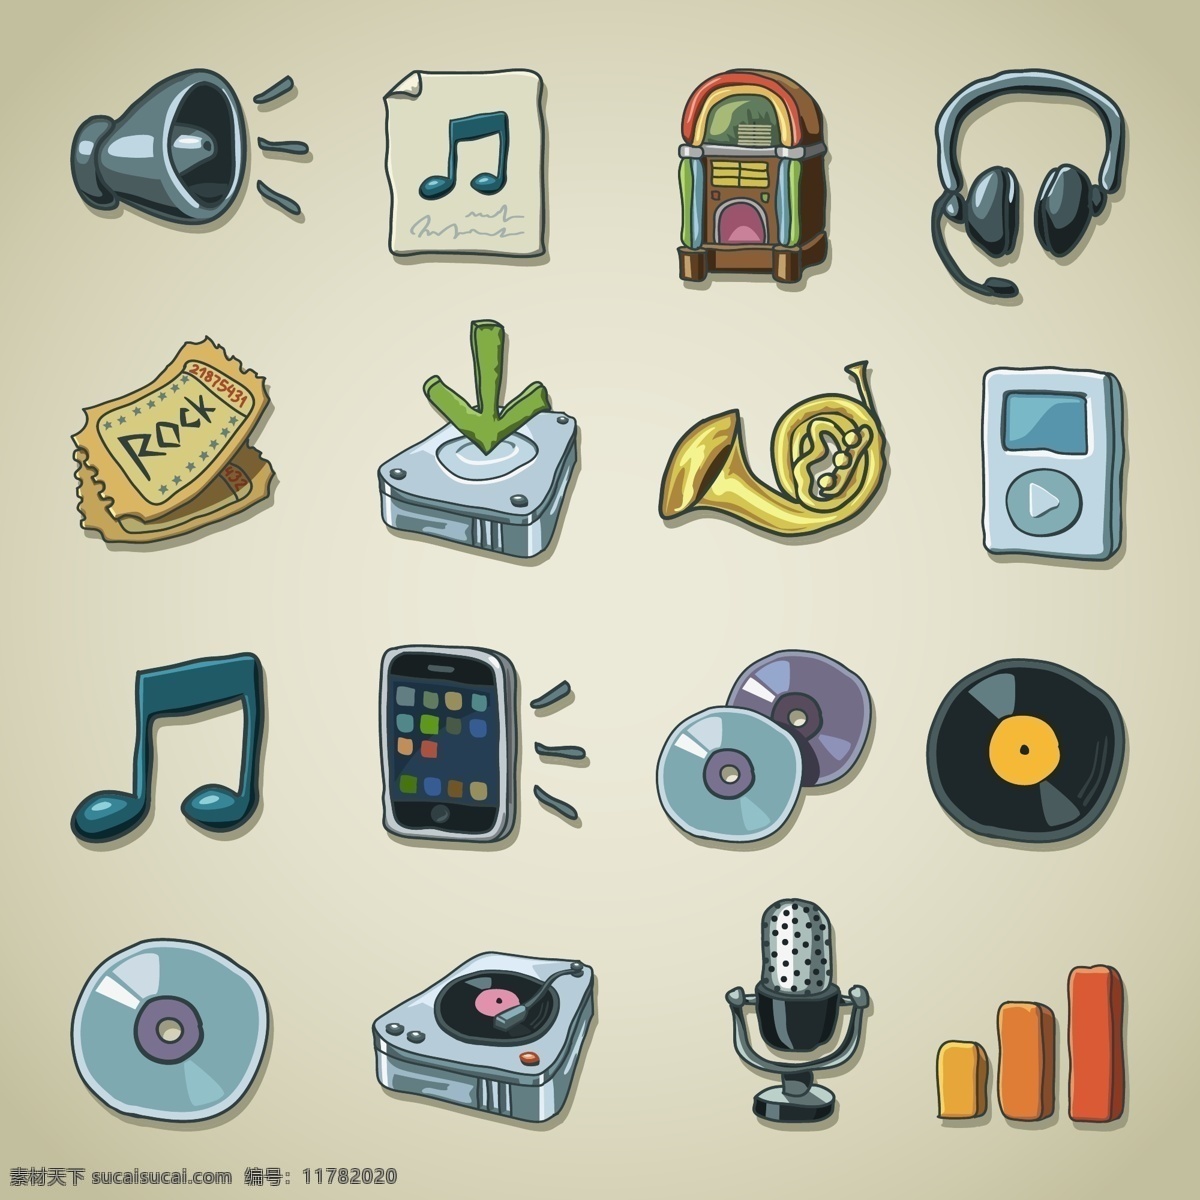 声音 常用 app 彩色 卡通 icon 喇叭 耳机 cd 音乐 麦克风 复古 图标 阅读 文件夹 笔记本 矢量 网页ui